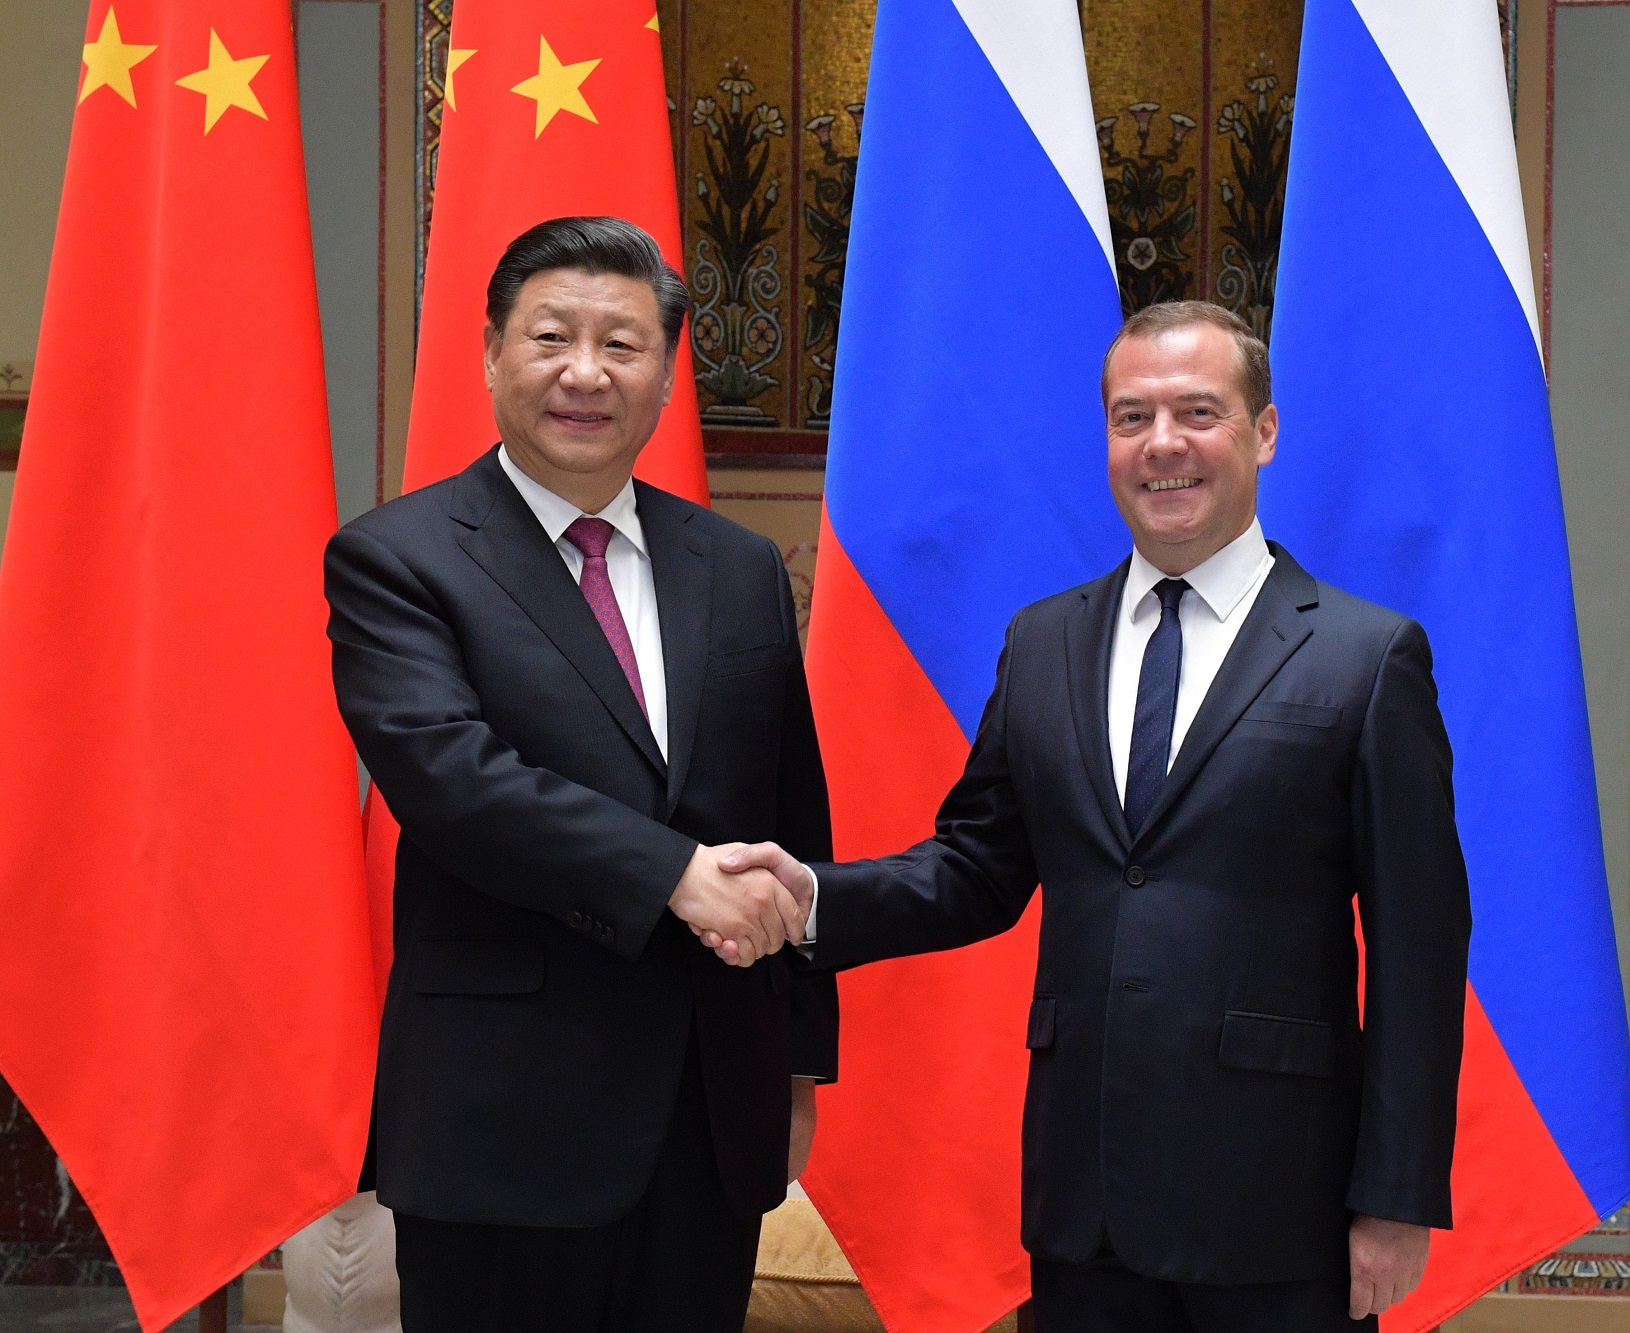 Ρωσία-Κίνα: Μεντβέντεφ και Σι Τζινπίνγκ συναντήθηκαν αιφνιδίως στο Πεκίνο- Στο επίκεντρο και ο πόλεμος στην Ουκρανία